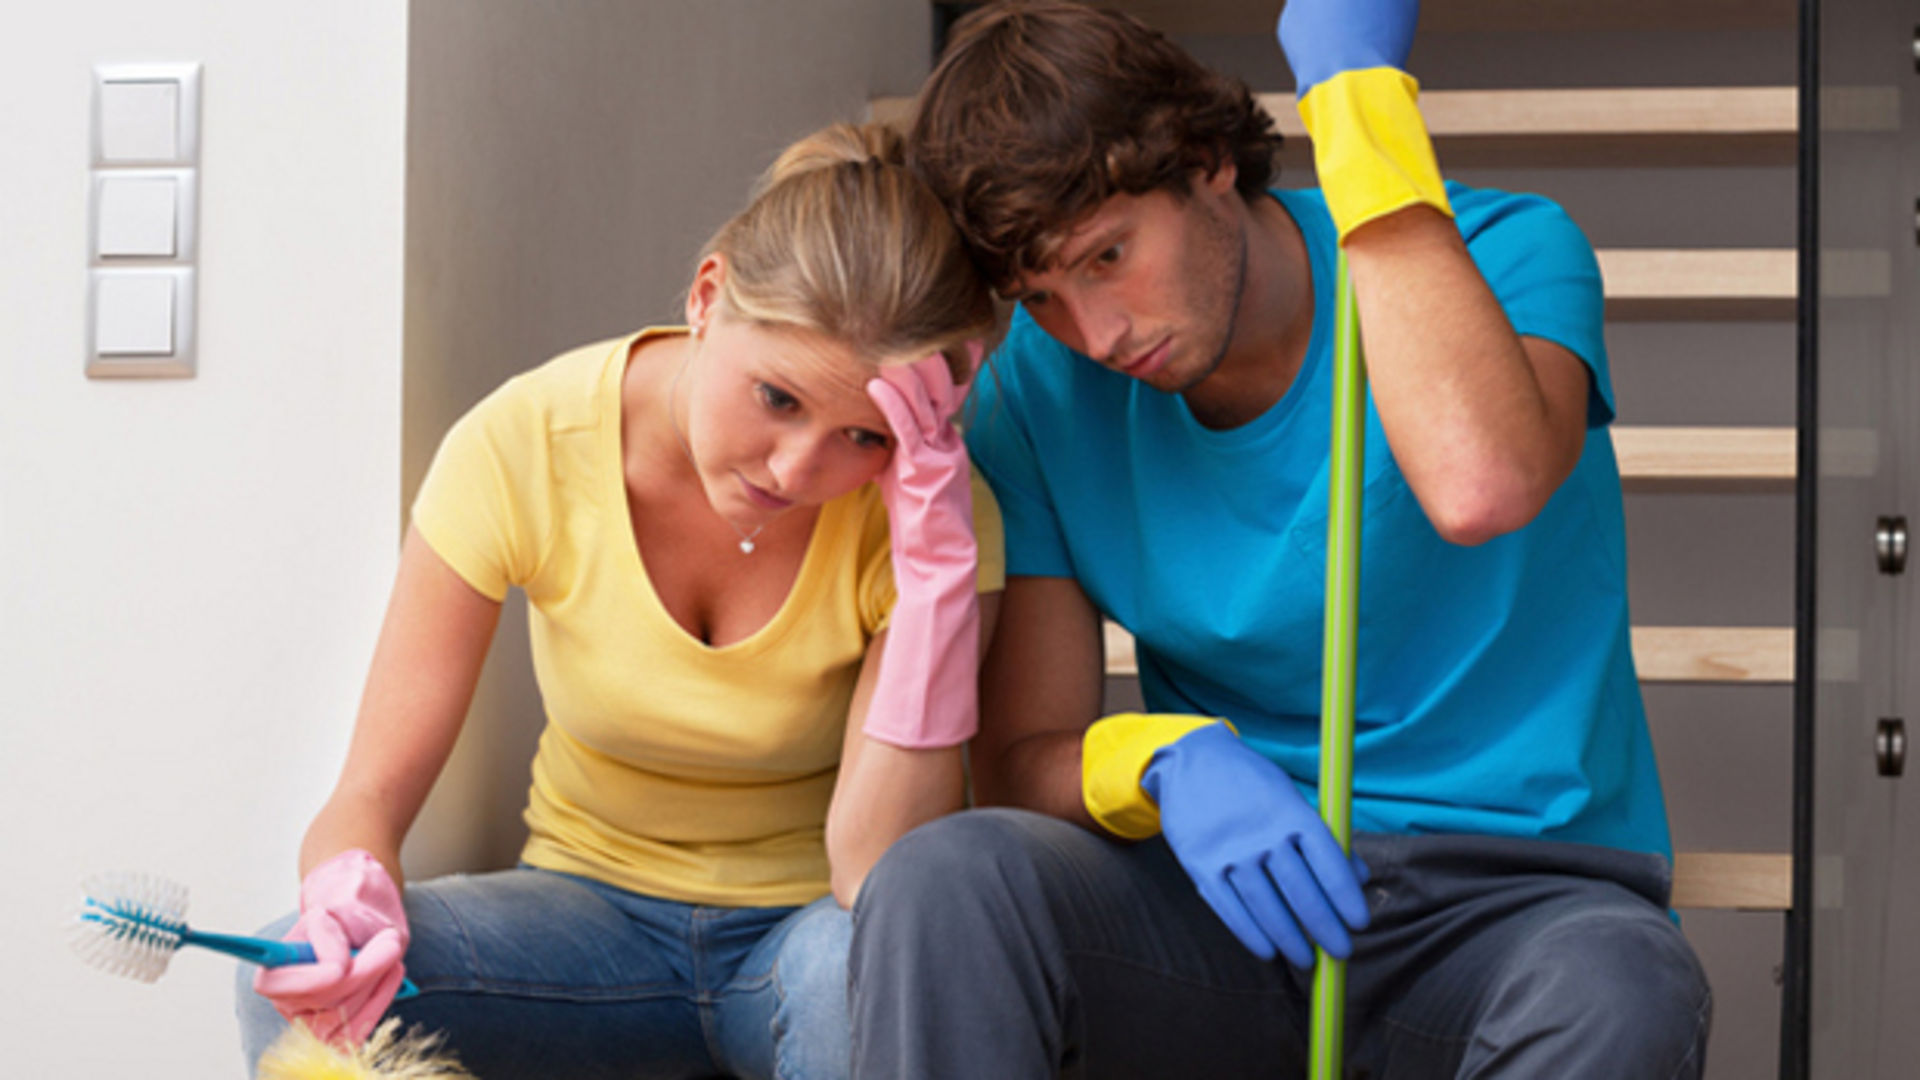 Обязать своей квартире. Мужчина и женщина убираются. Домашние дела вместе. Совместная уборка в доме. Обязанности по дому уборка.